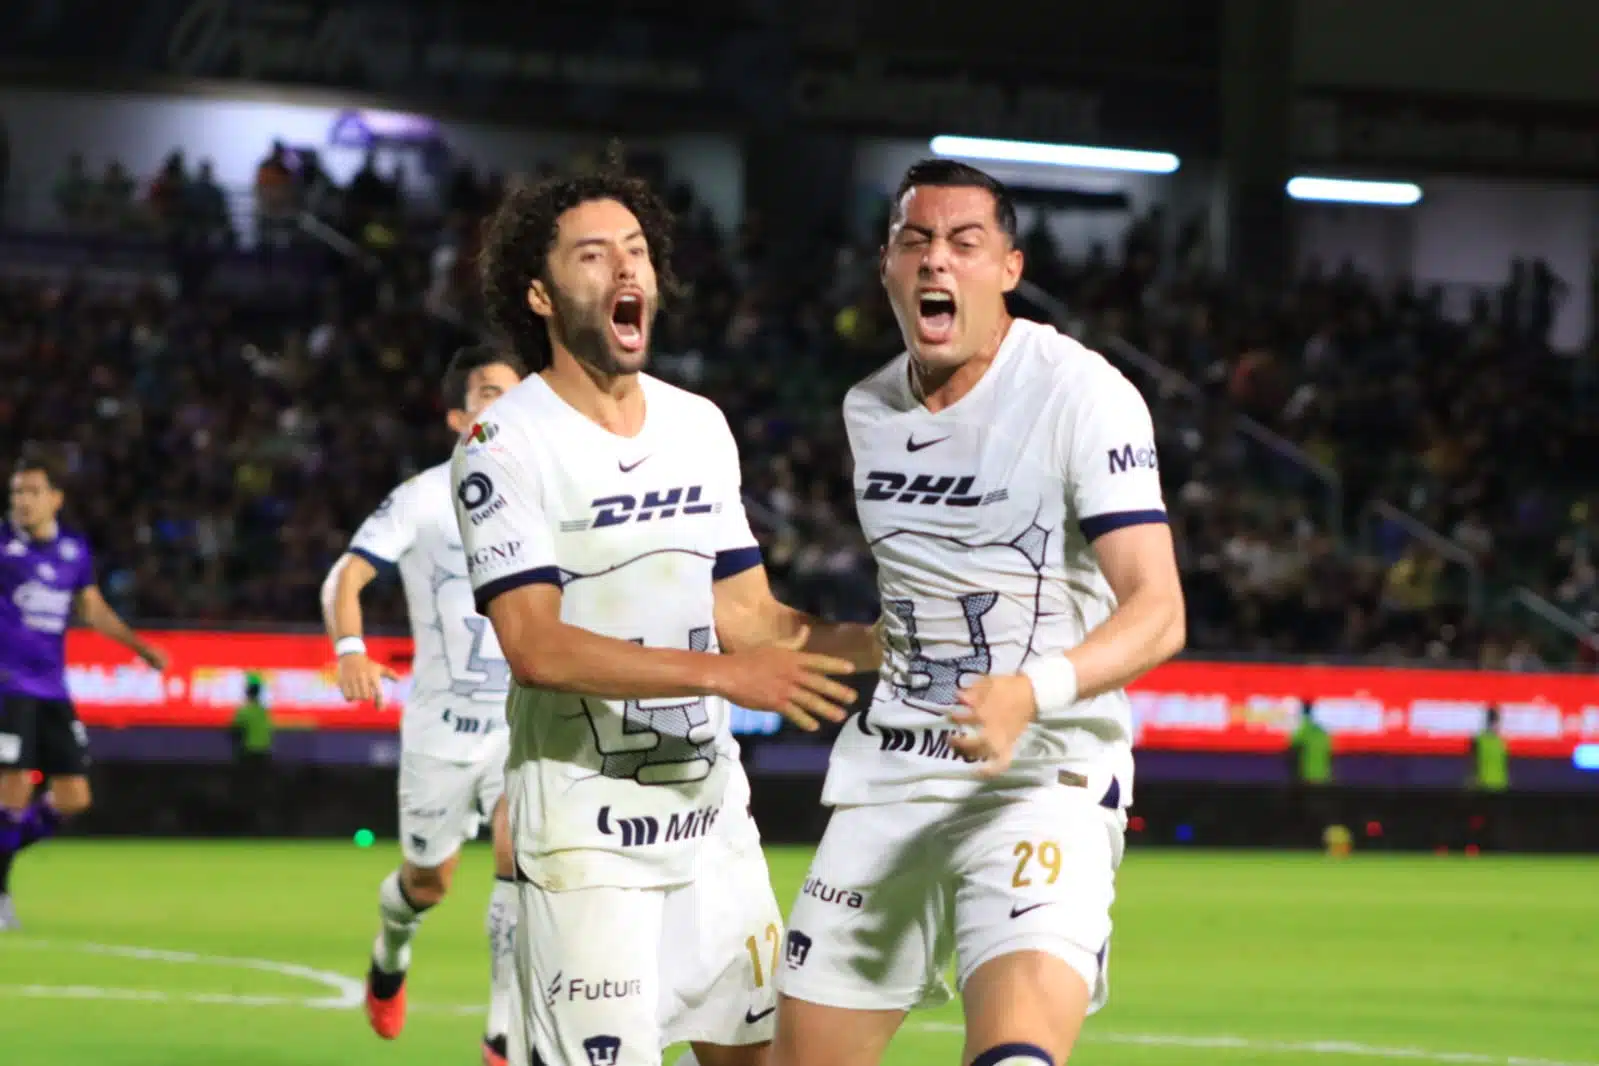 Un gol tempranero de César “Chino” Huerta pegó anímicamente en el accionar del cuadro de Mazatlán.